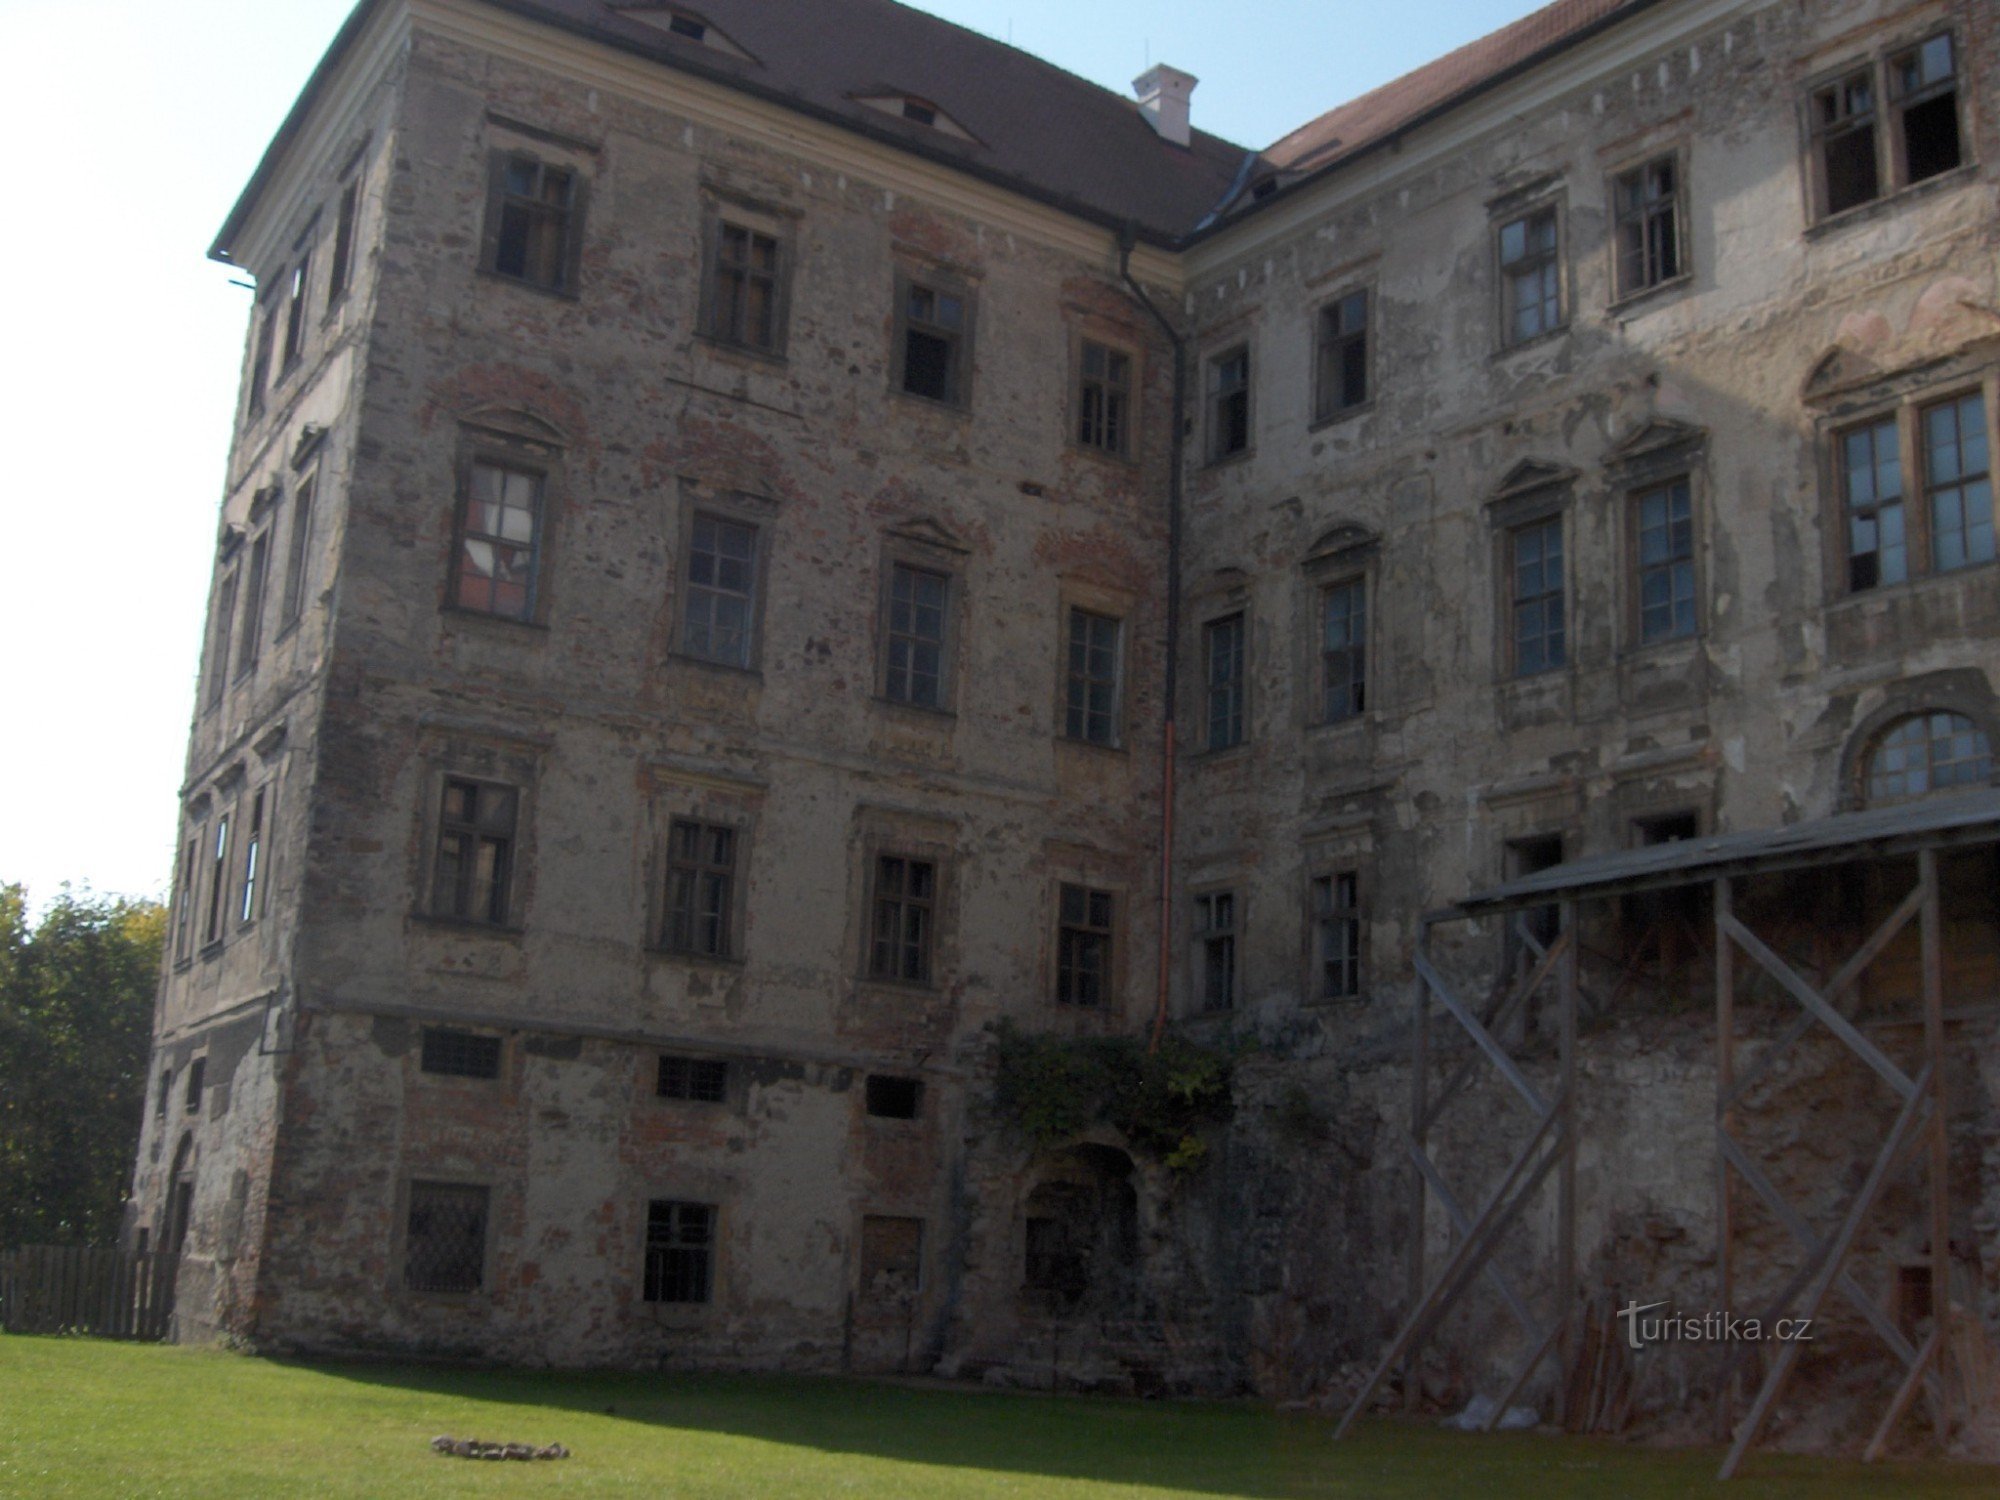 this is also Jezeří castle